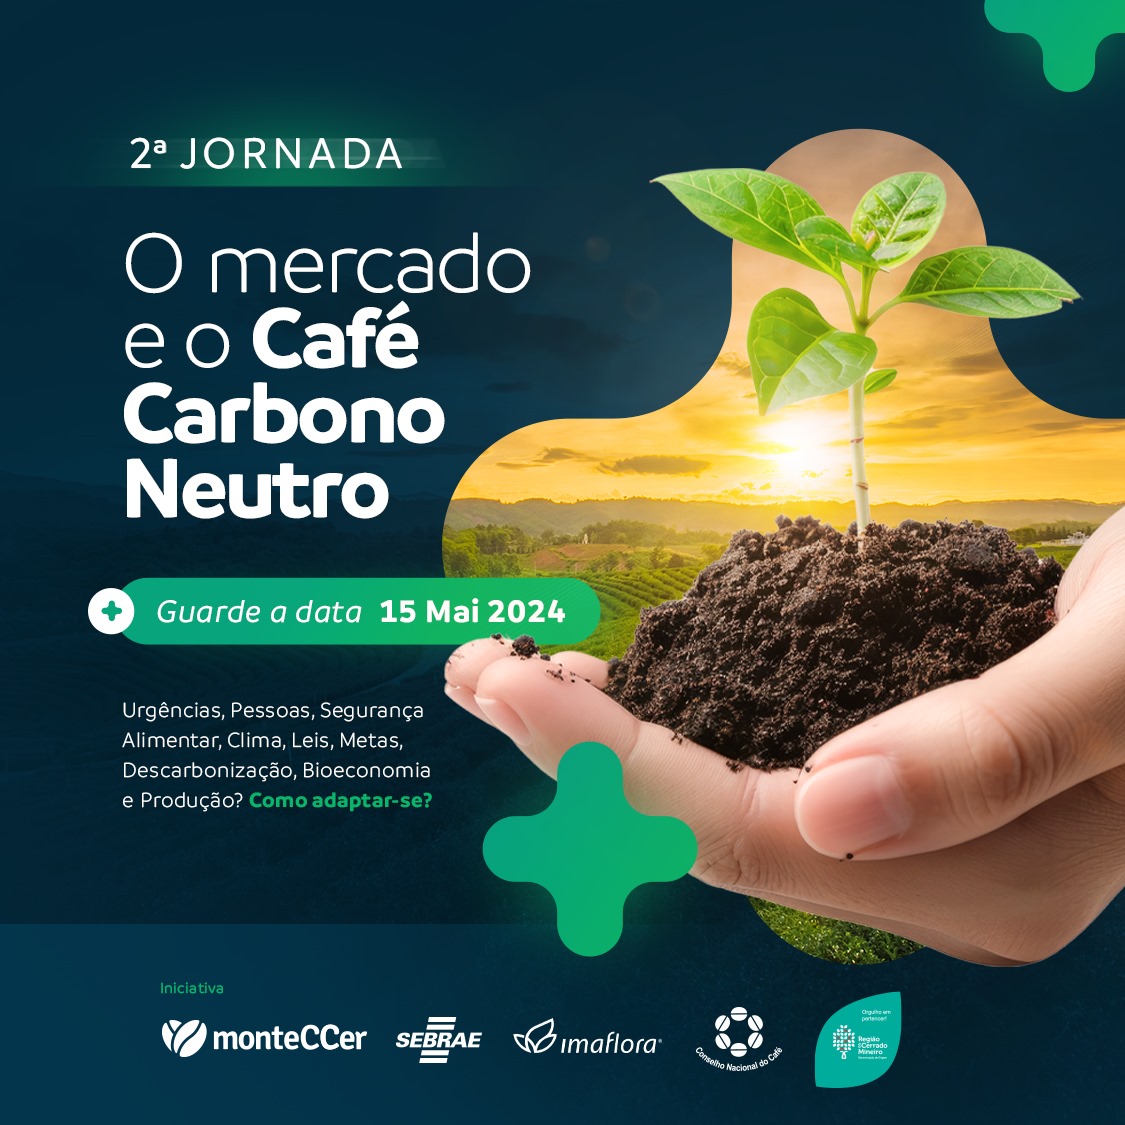 2ª Jornada: O Mercado e o Café Carbono Neutro reúne principais nomes da cafeicultura, no Cerrado Mineiro